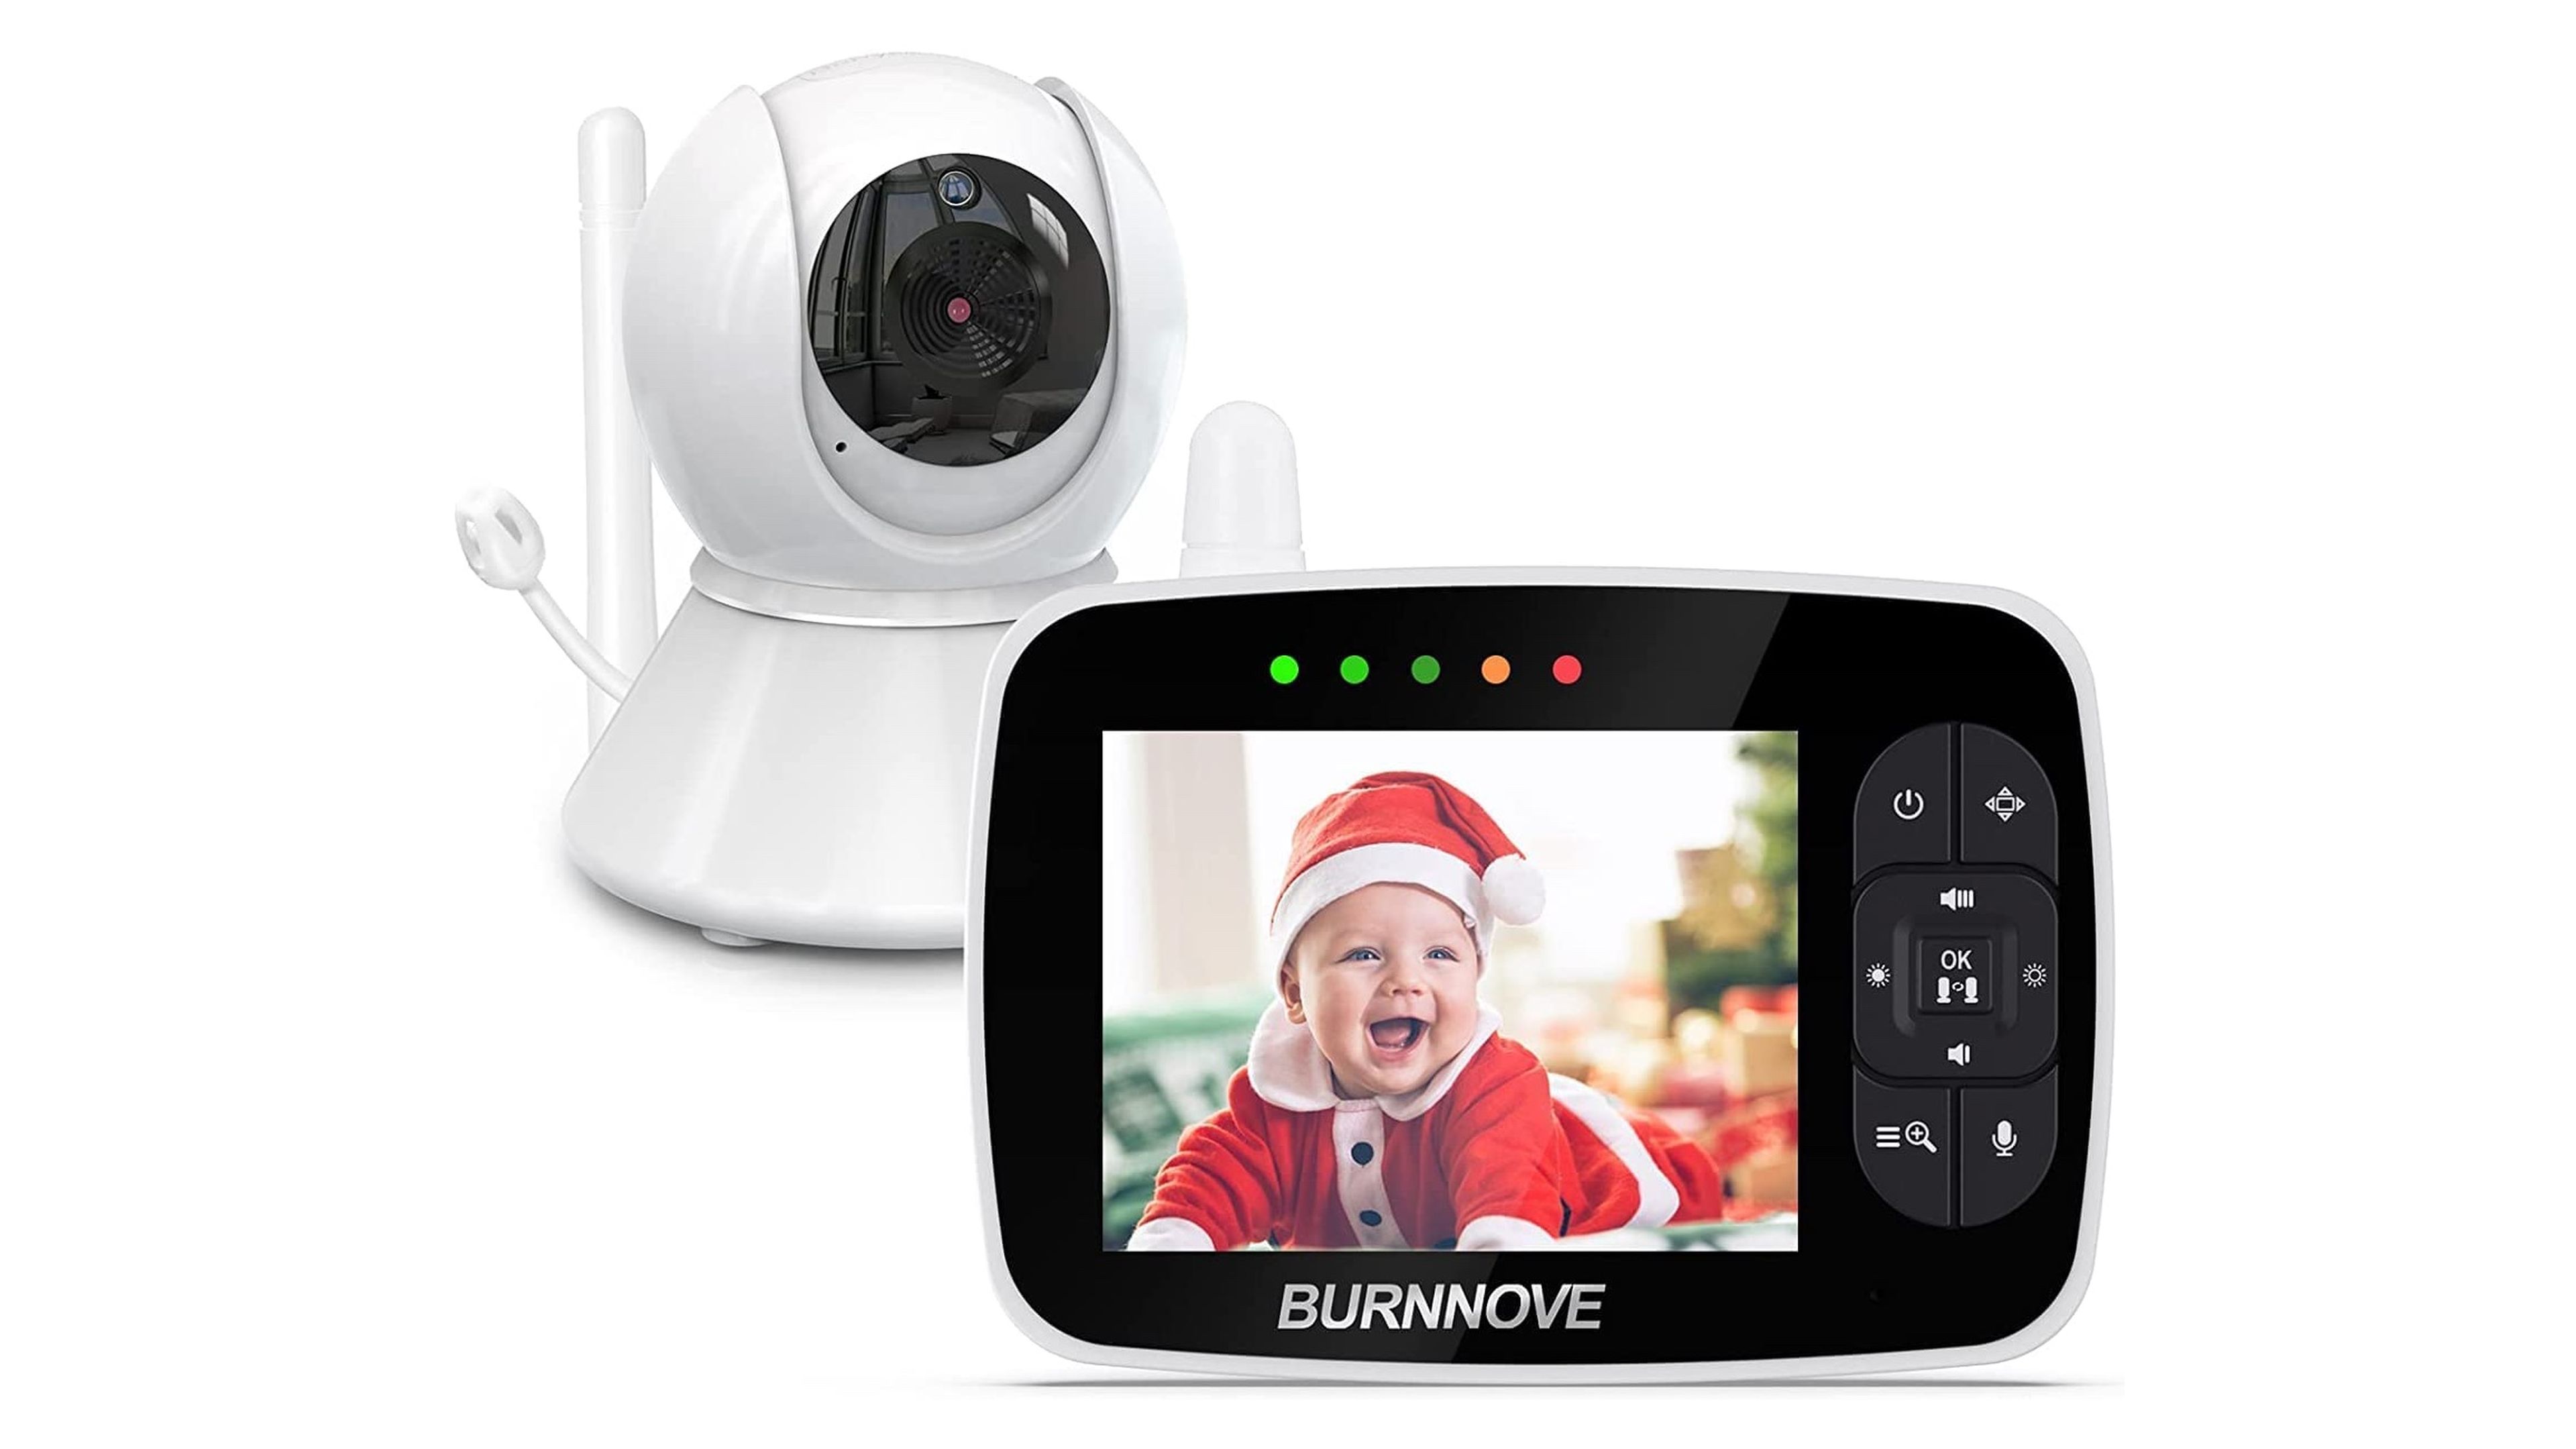 Mejores cámaras de vigilancia para bebés - Vigilabebés recomendados